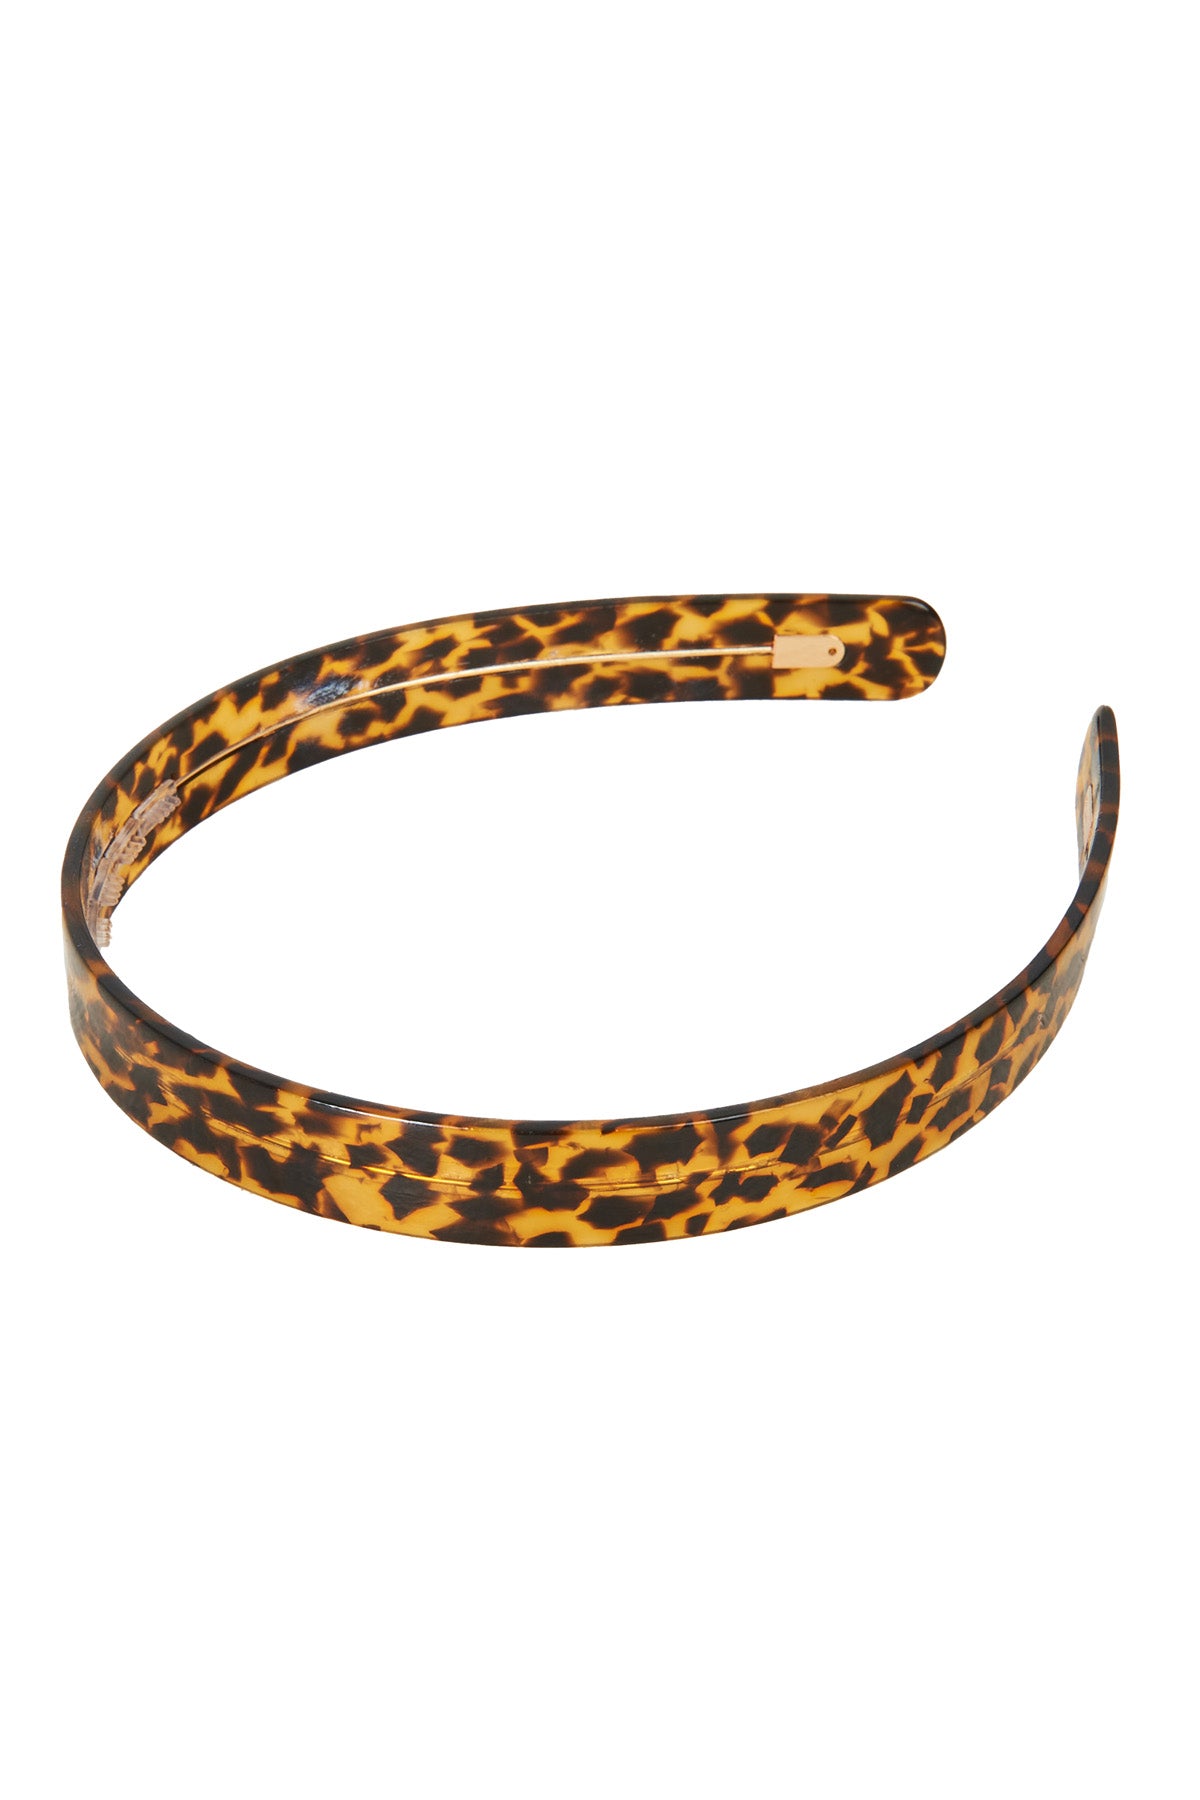 Safari Bands - Leopard - eb&ive Headwear